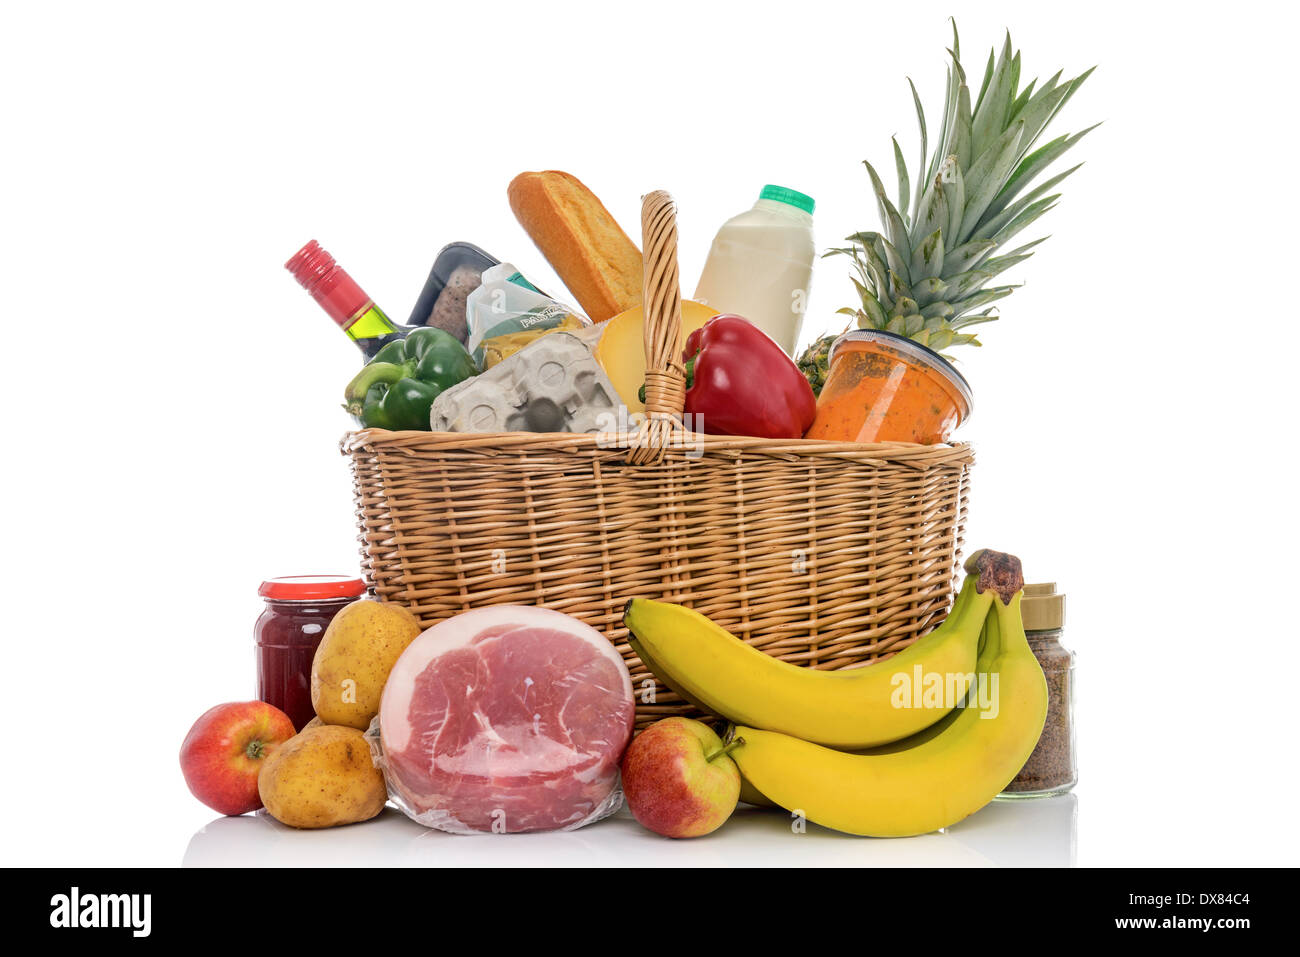 Shopping in vimini cesto pieno di negozi di generi alimentari quali frutta fresca, verdura, la carne e i prodotti lattiero-caseari. Foto Stock